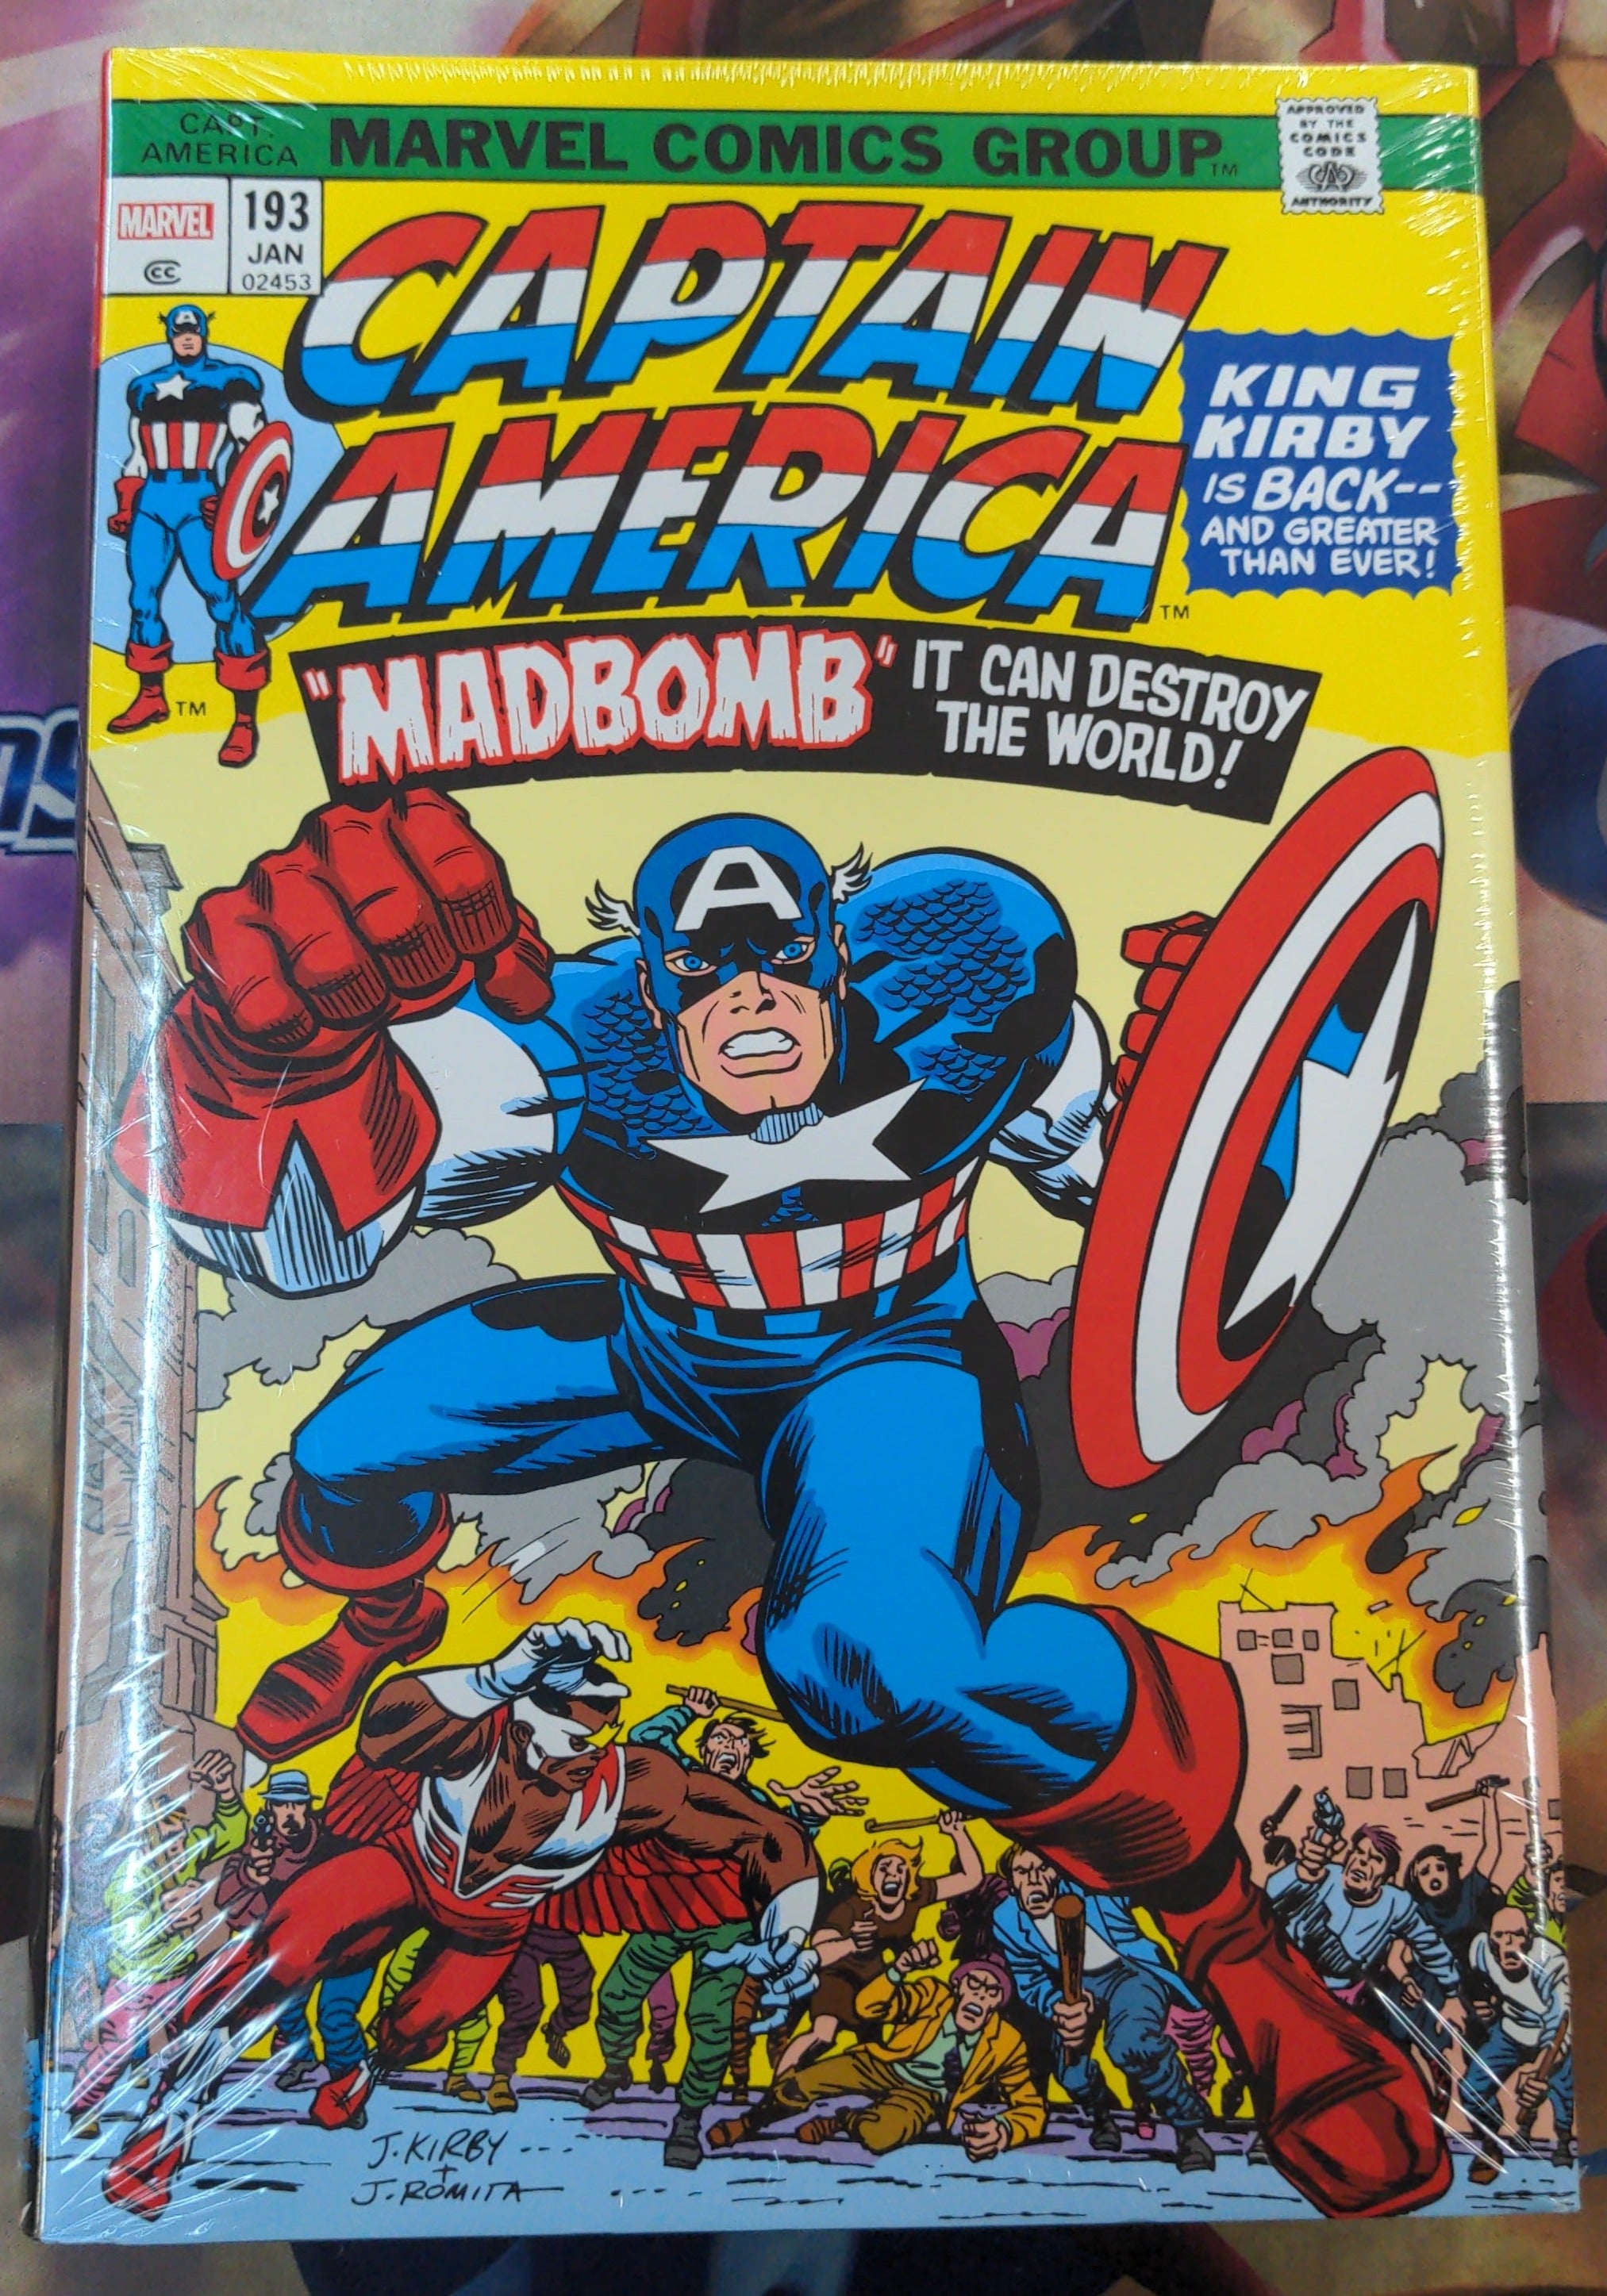 Captain America par Jack Kirby omnibus couverture rigide Madbomb couverture nouvelle impression | BD Cosmos